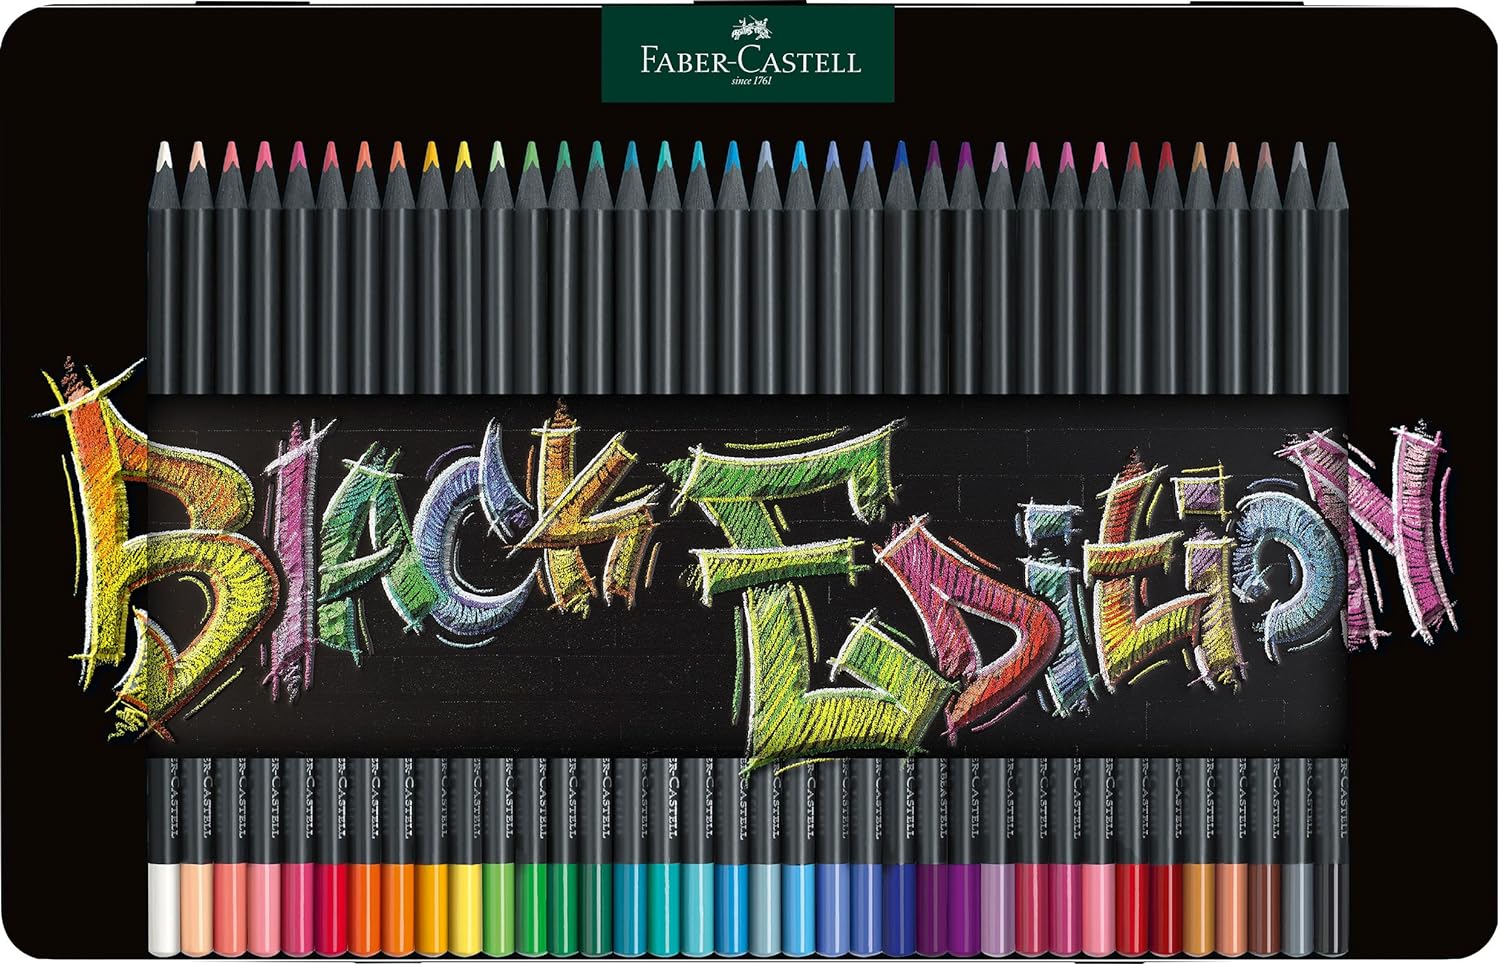 Faber-Castell Black Edition Boîte Métal de 36 Crayons de Couleur - Mine Super Douce - Bois Noir - Idéal pour Dessiner sur Papier Clair, Foncé et Coloré - Couleurs Assorties